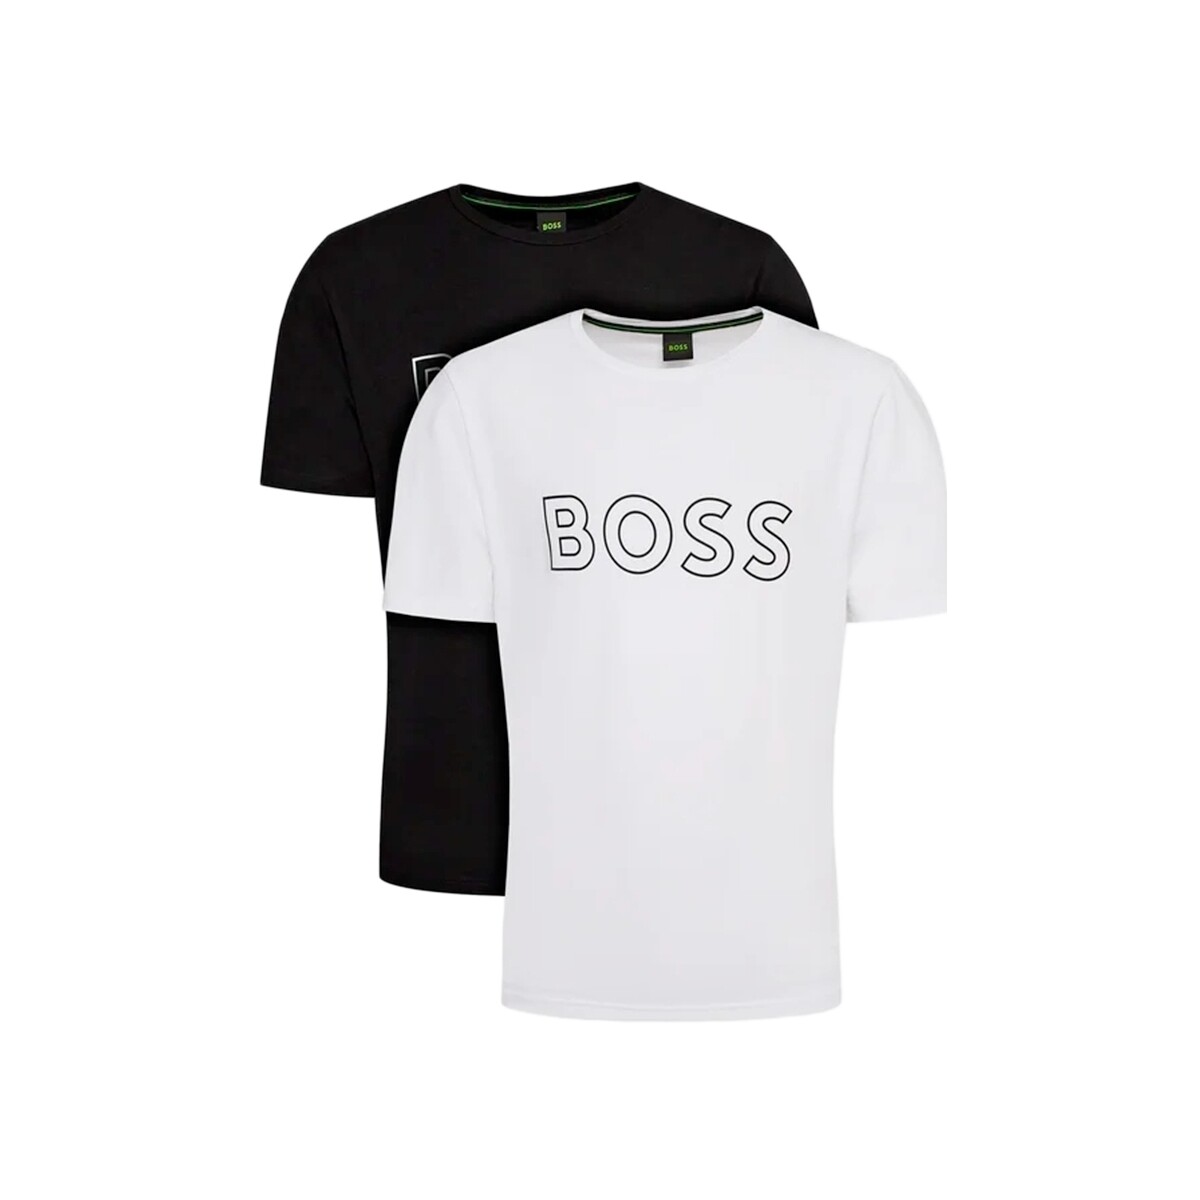 Vêtements Homme T-shirts manches courtes BOSS Authentic Multicolore